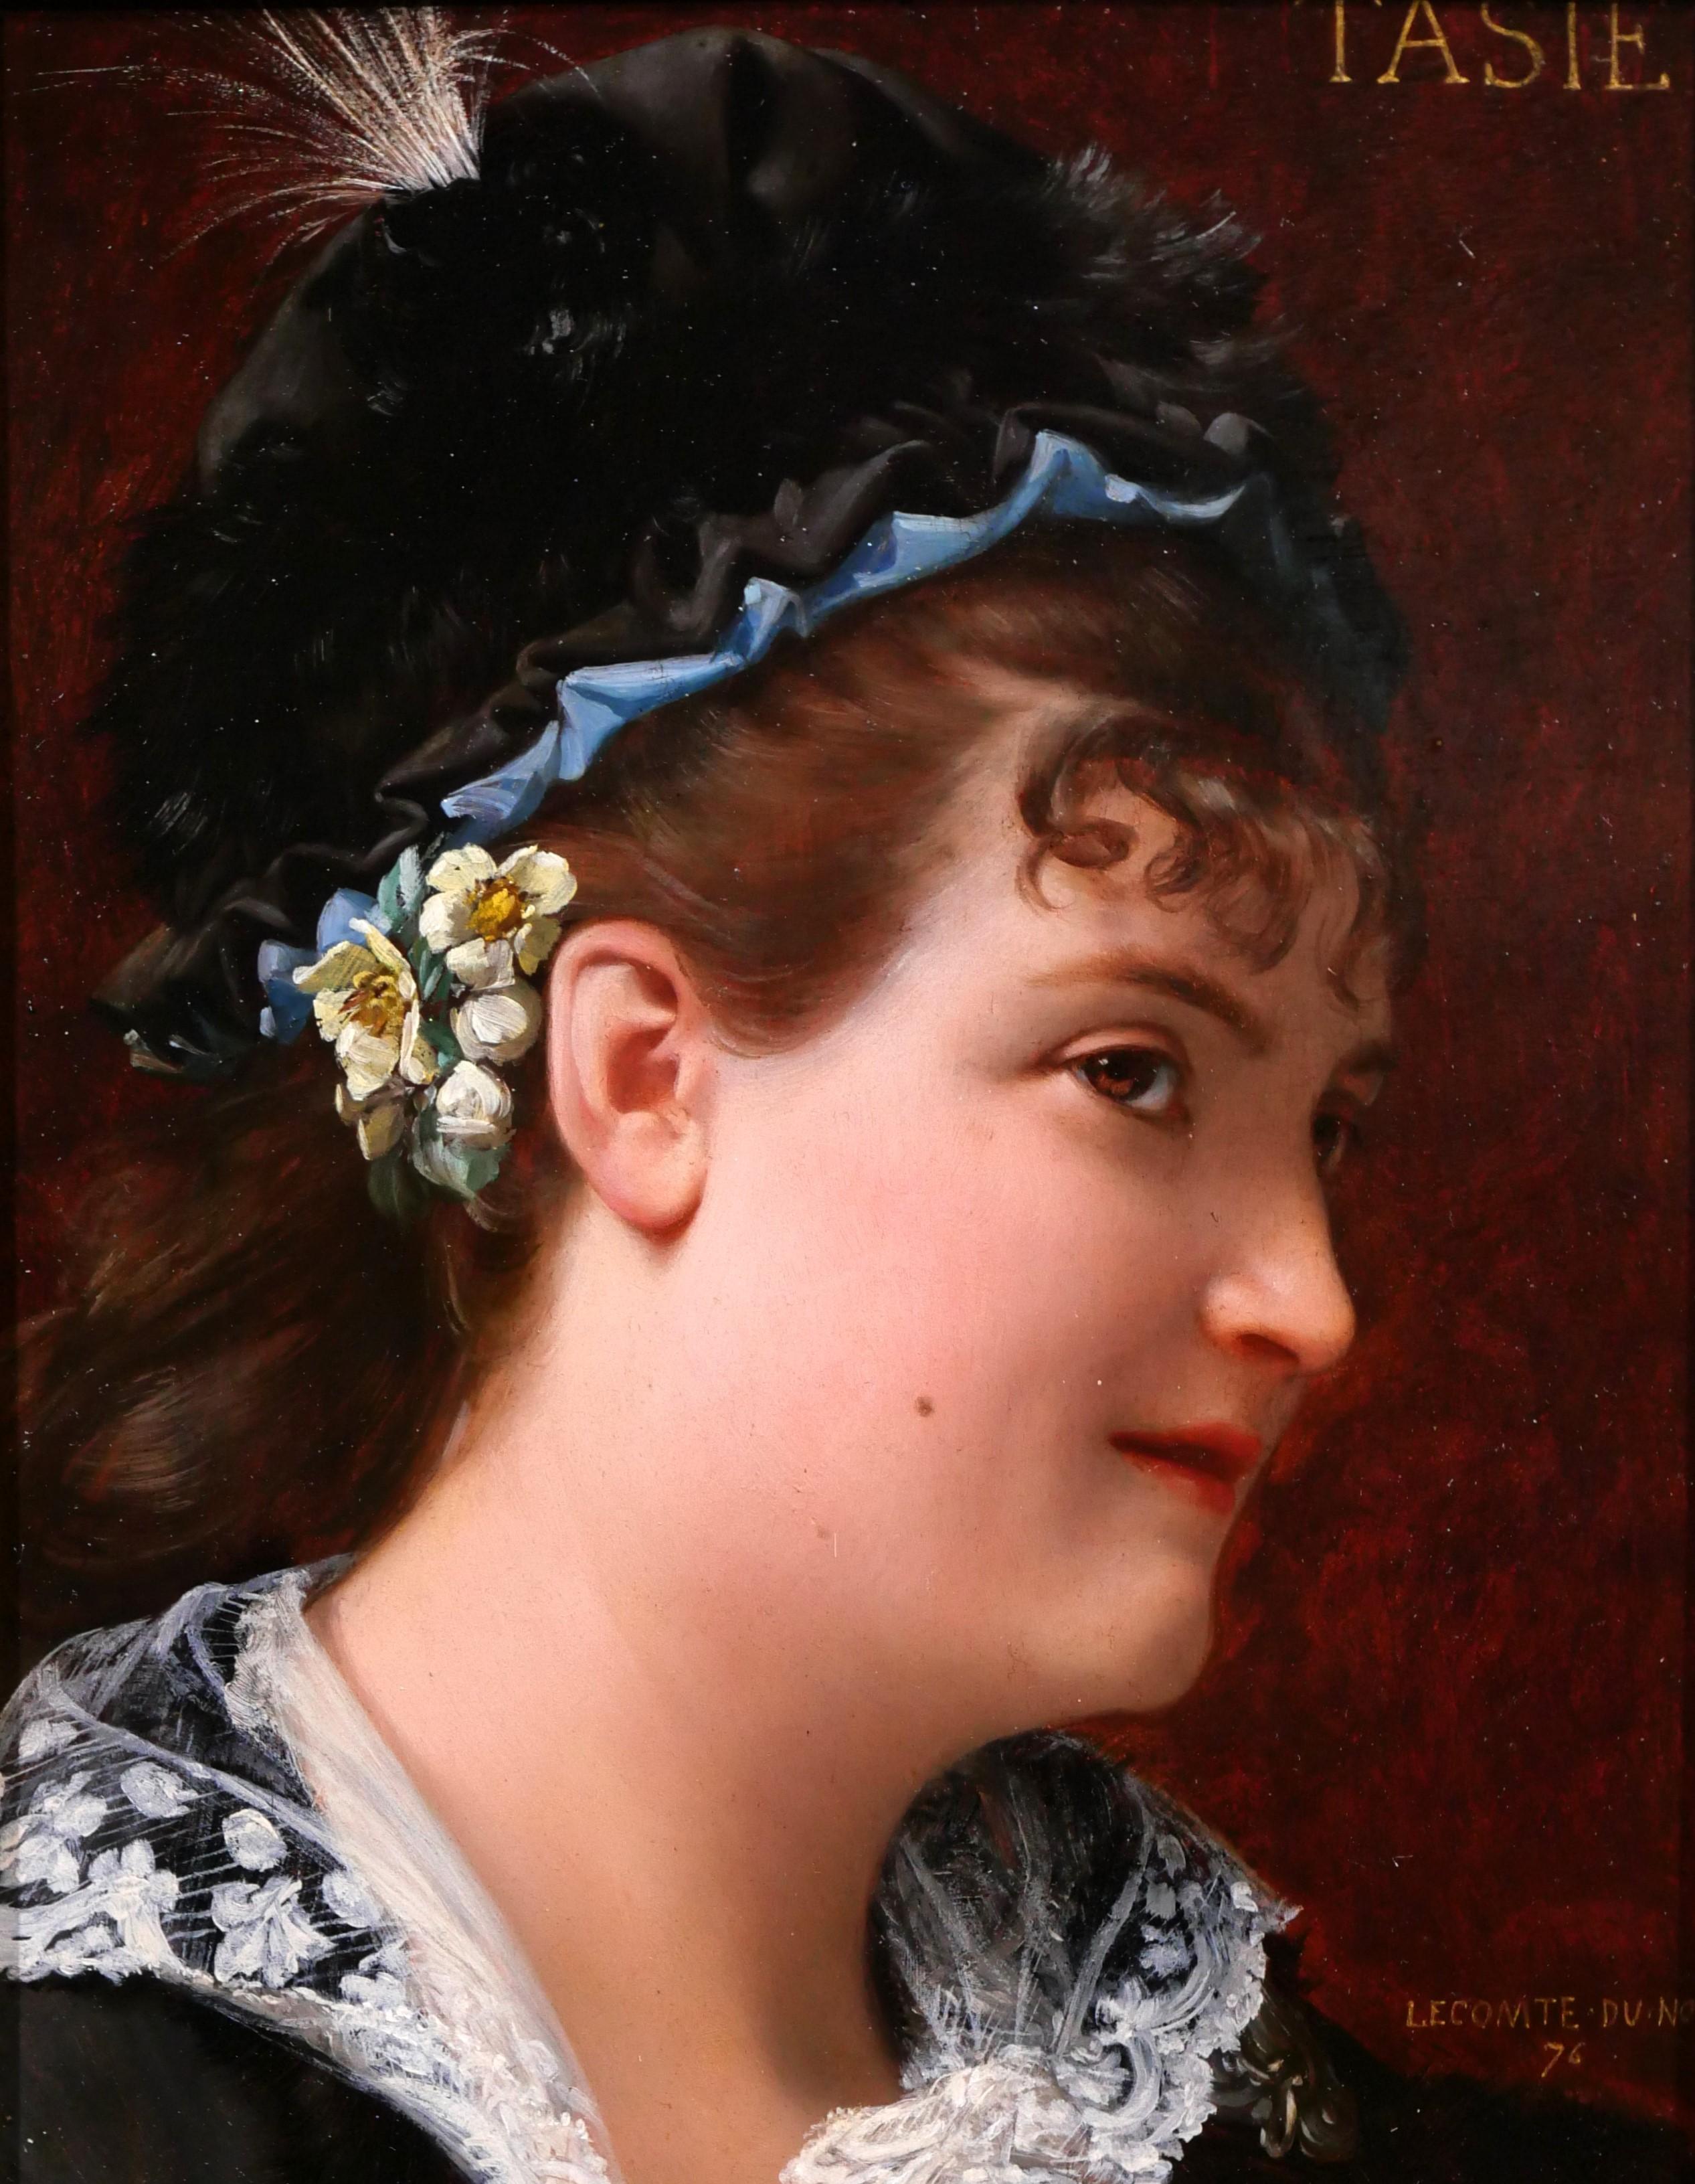 Portrait de femme, Tasie - Académique Painting par Jean Jules Antoine LECOMTE DU NOÜY